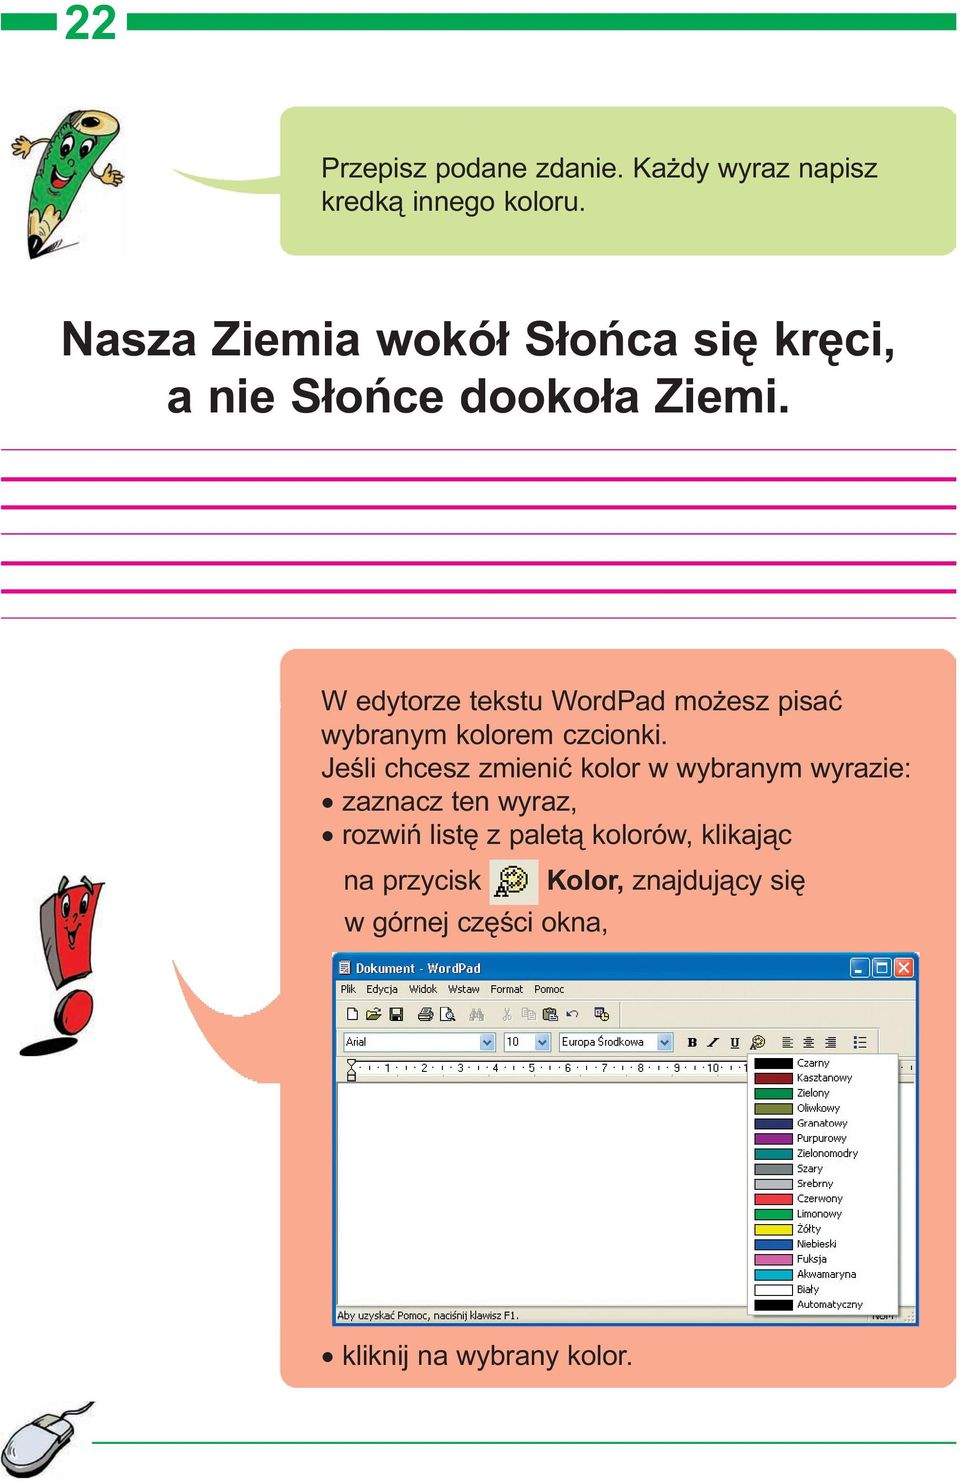 W edytorze tekstu WordPad mo esz pisaæ wybranym kolorem czcionki.